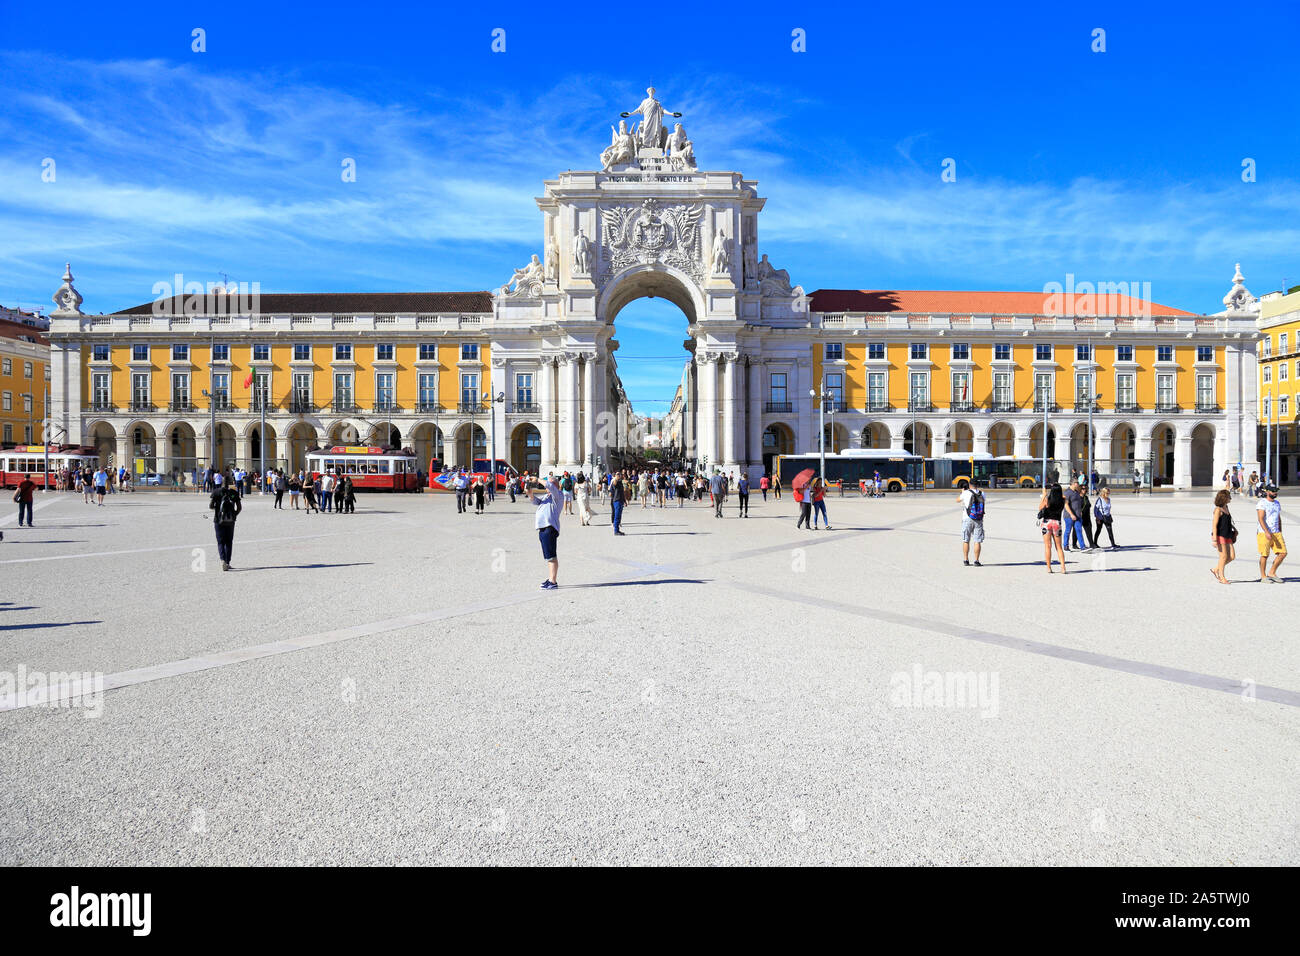 Arco da Rua Augusta ornate triumphal arch in Parca do Comercio, Lisbon, Portugal. Stock Photo